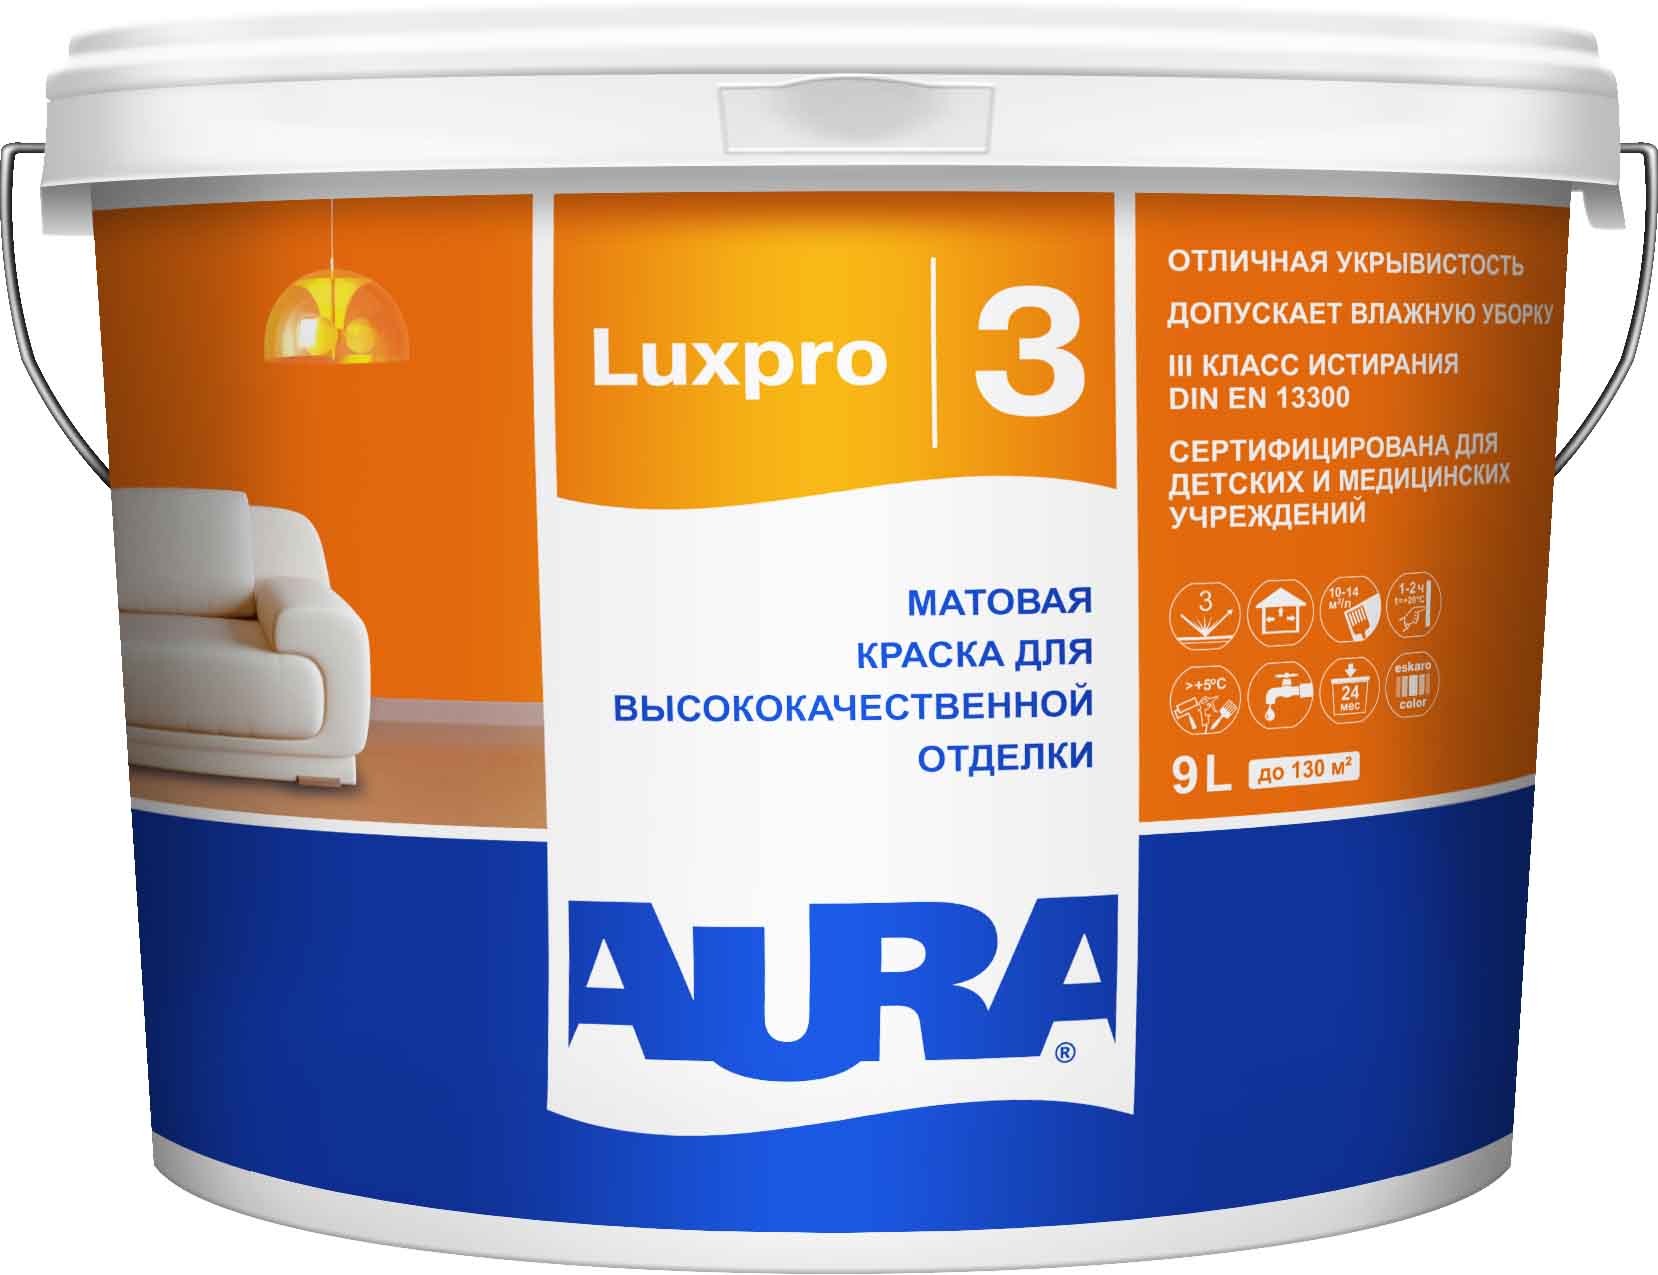 Матовая краска для высококачественной отделки AURA Luxpro 3 / АУРА Люкспро 3 9л (база А)